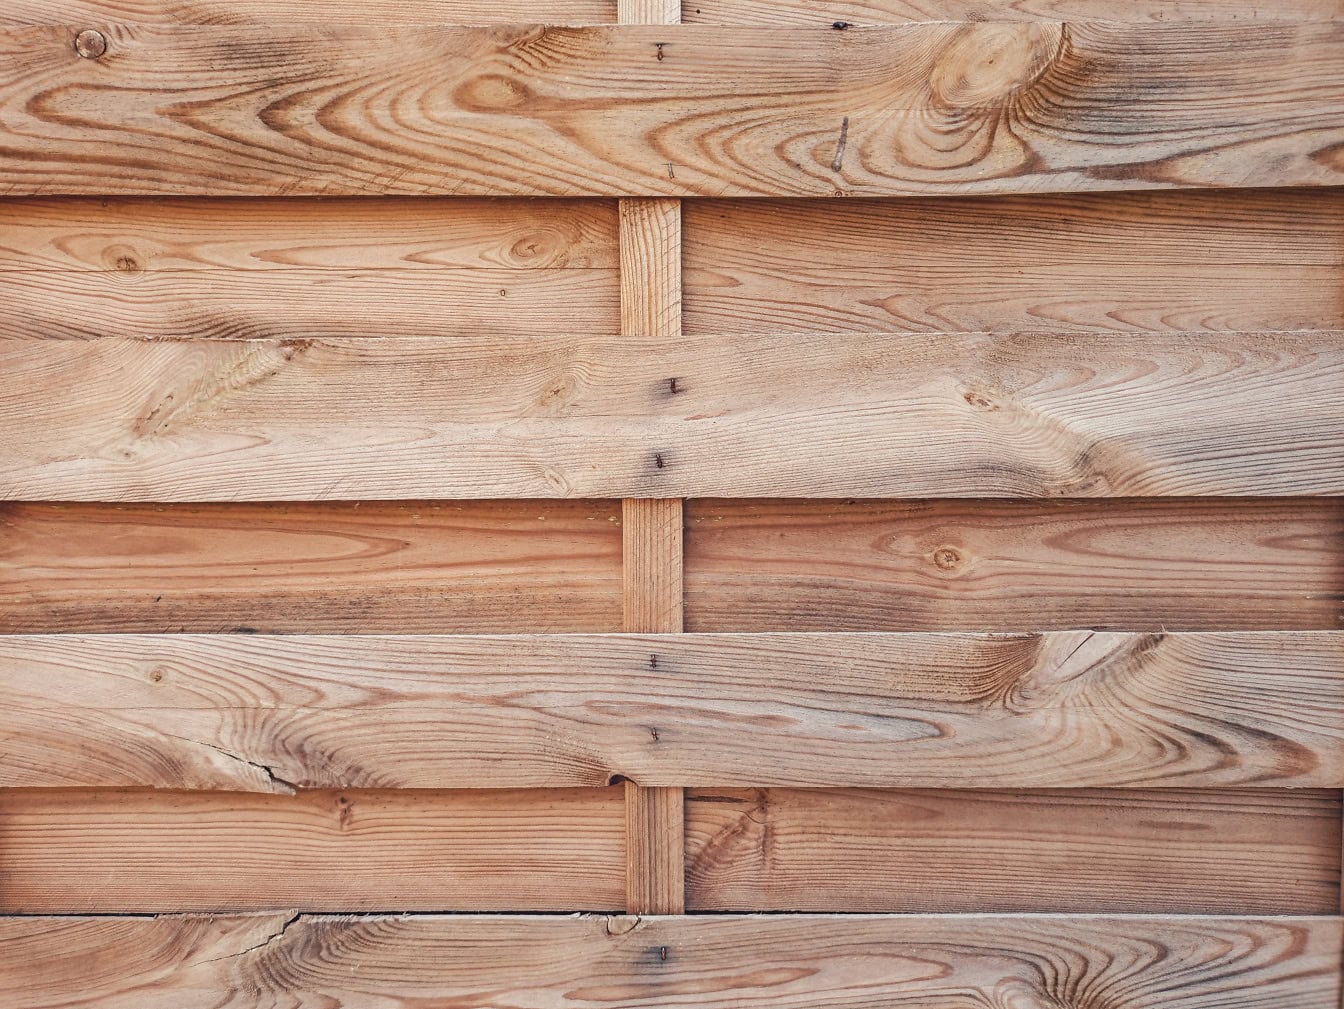 Textuur van een houten plank gemaakt van dunne hardhouten latten die horizontaal met knopen op planken worden gestapeld